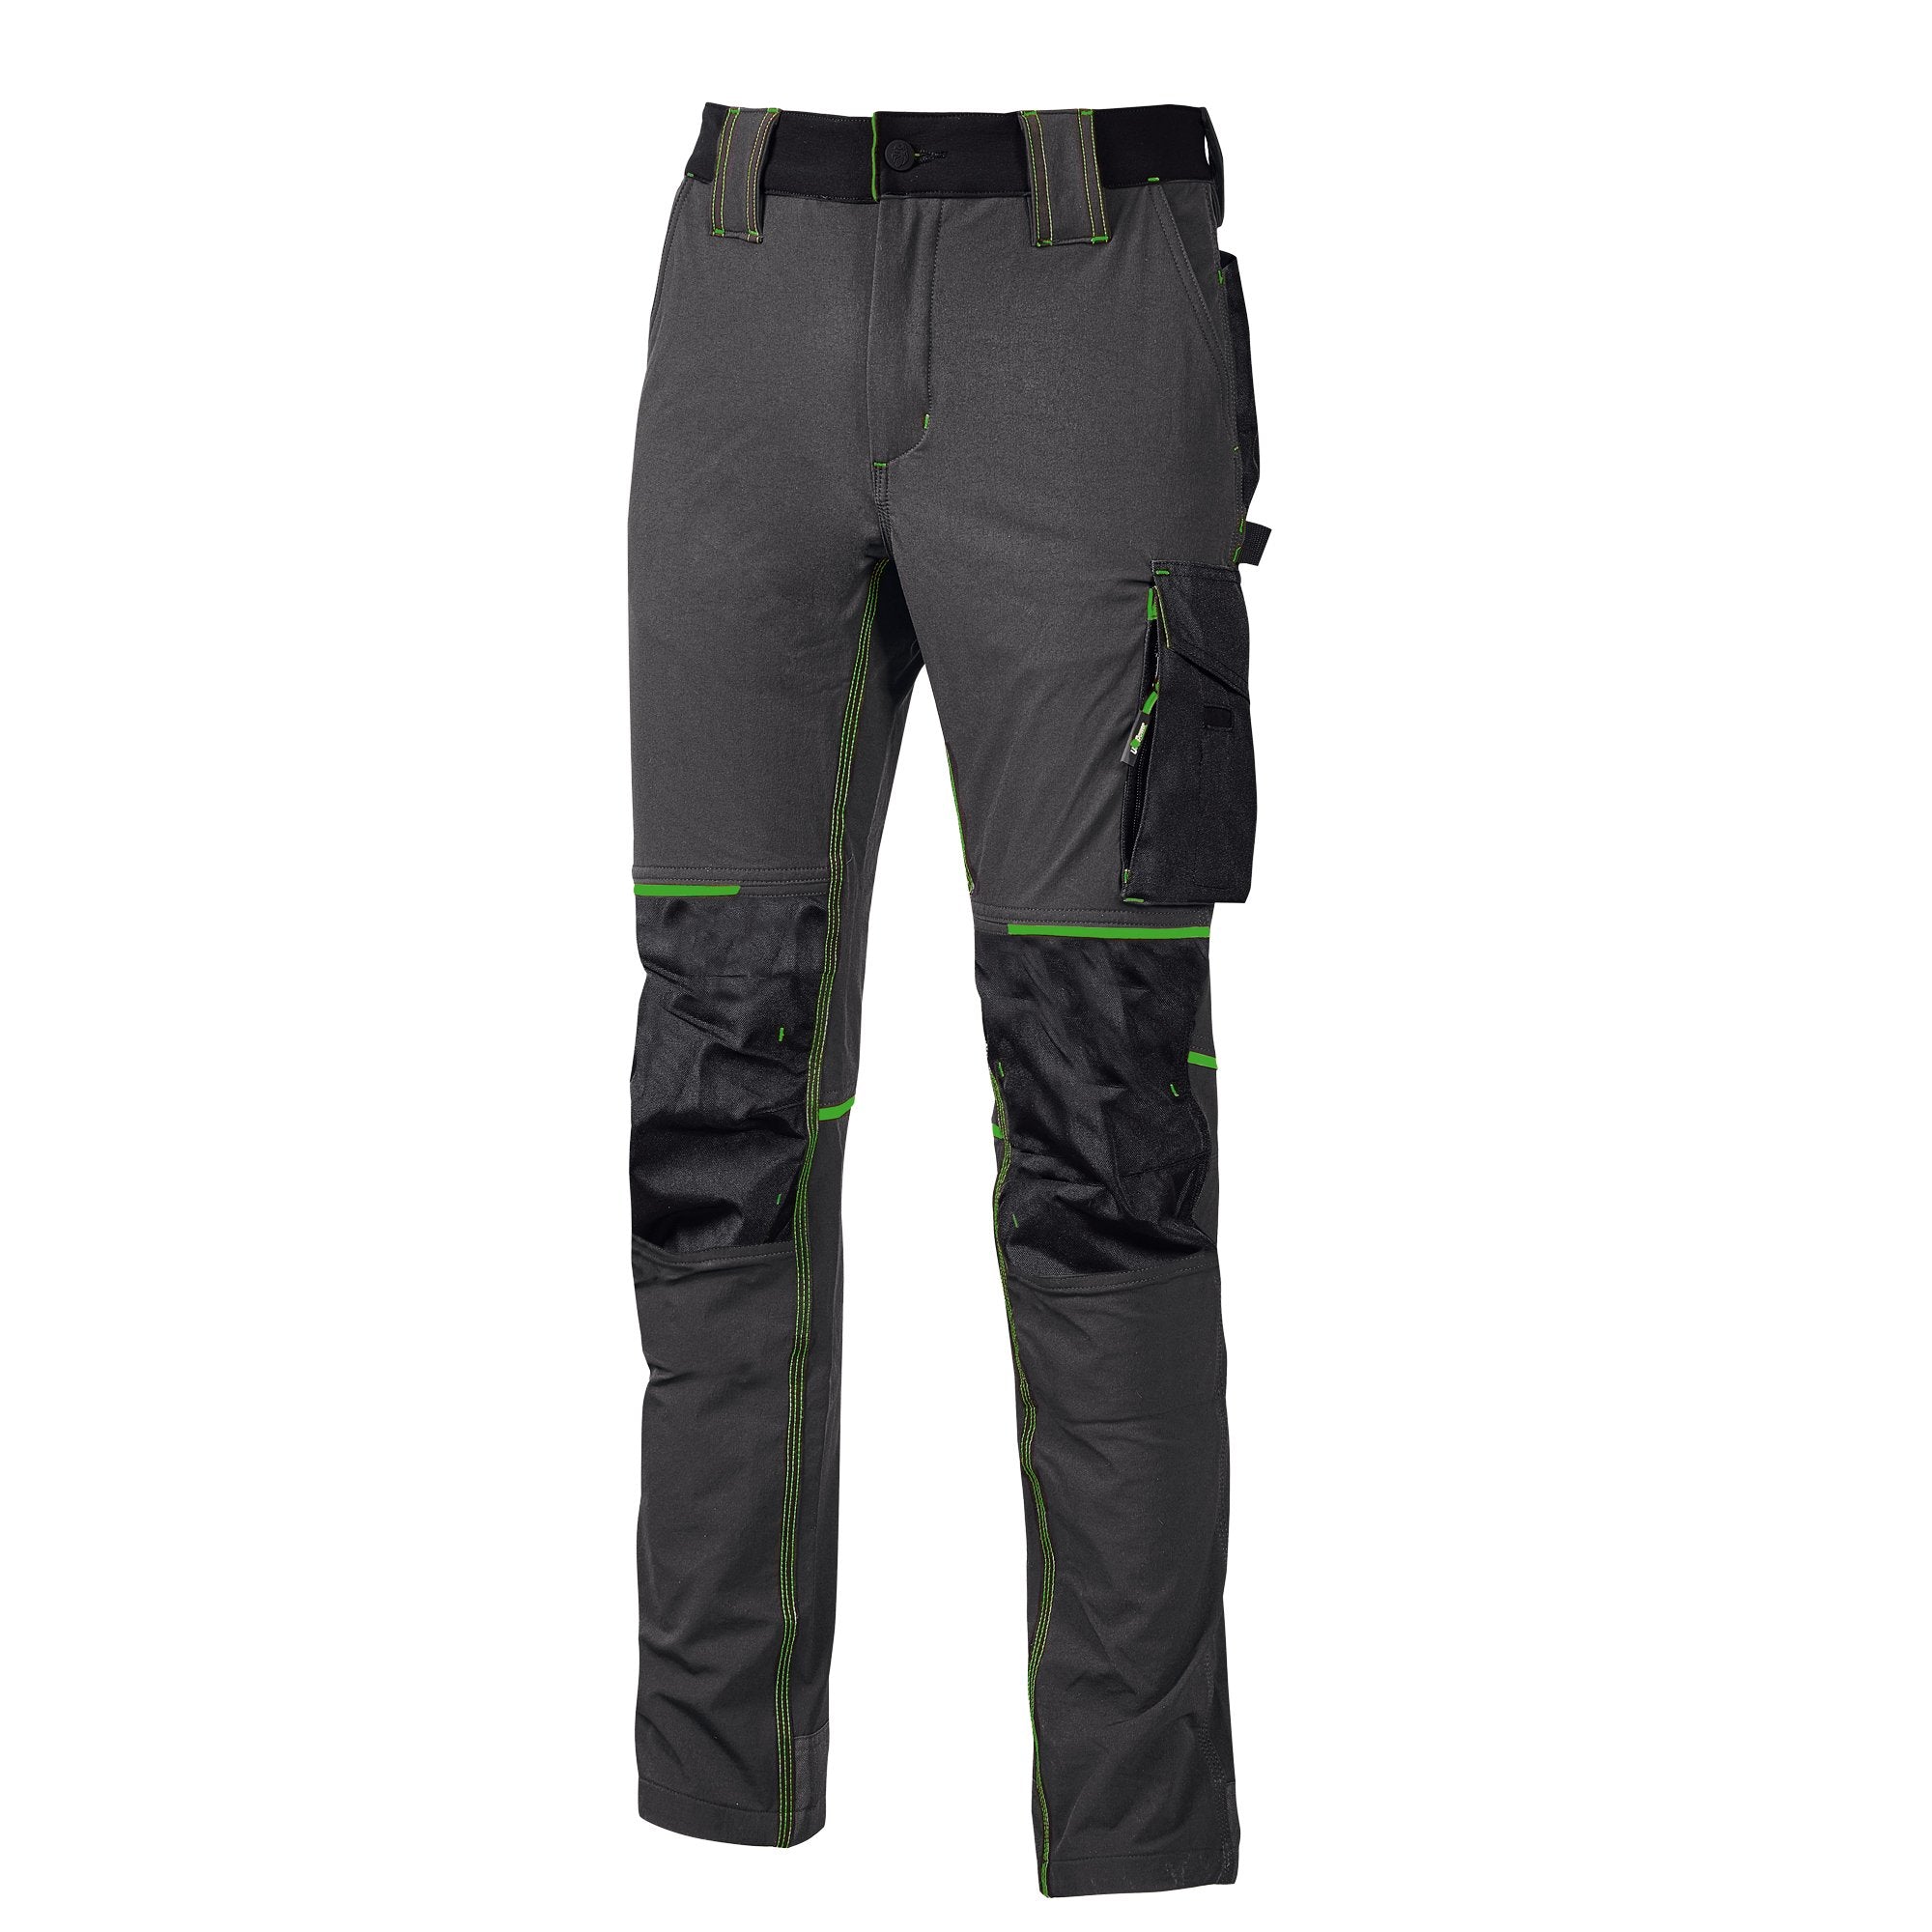 u-power-pantaloni-lavoro-atom-taglia-xl-grigio-verde